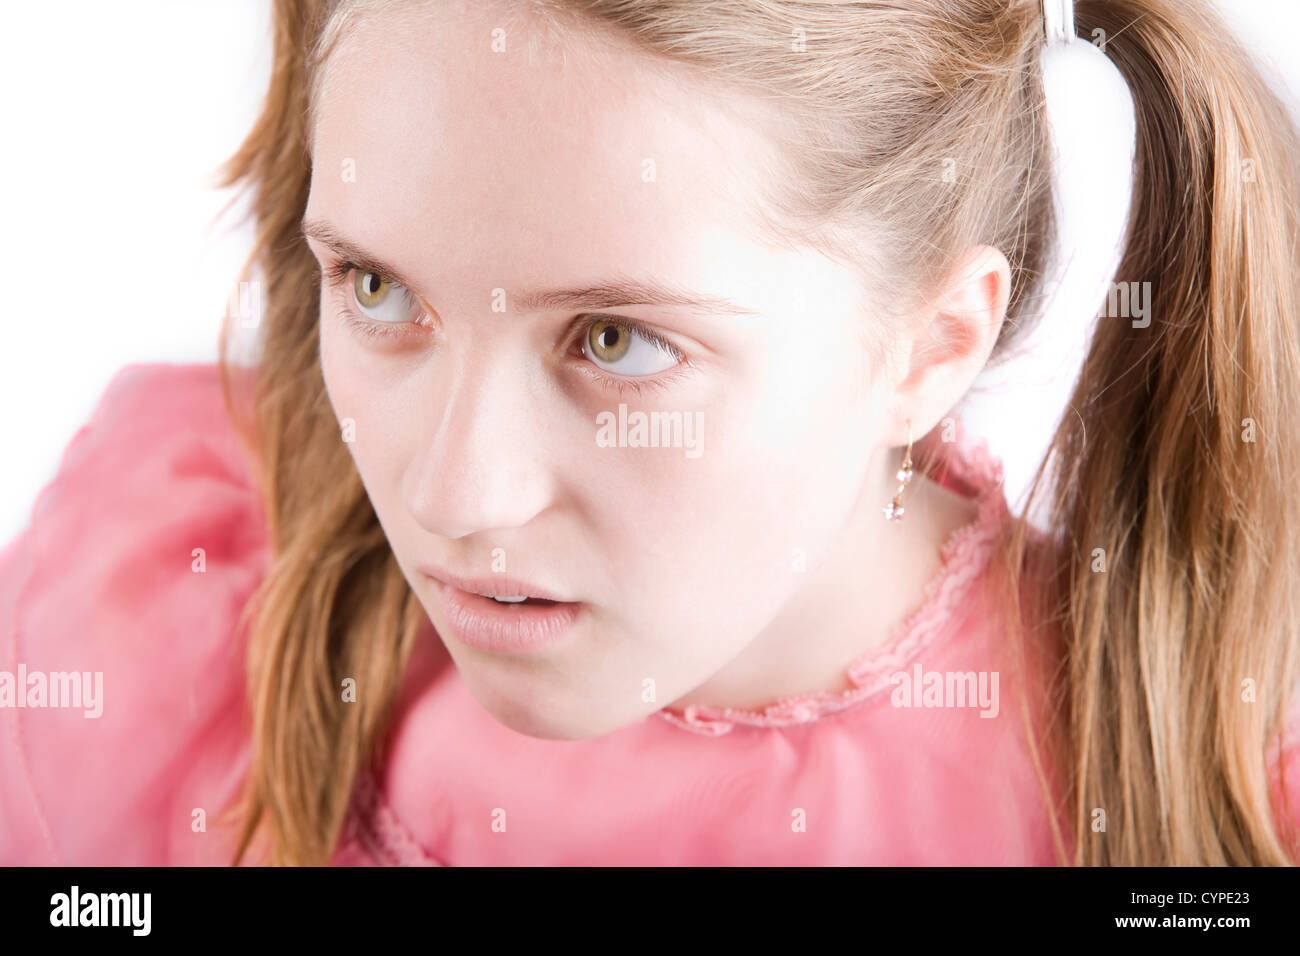 Bratty junges Mädchen mit einem angewidert Ausdruck auf ihrem Gesicht Stockfoto